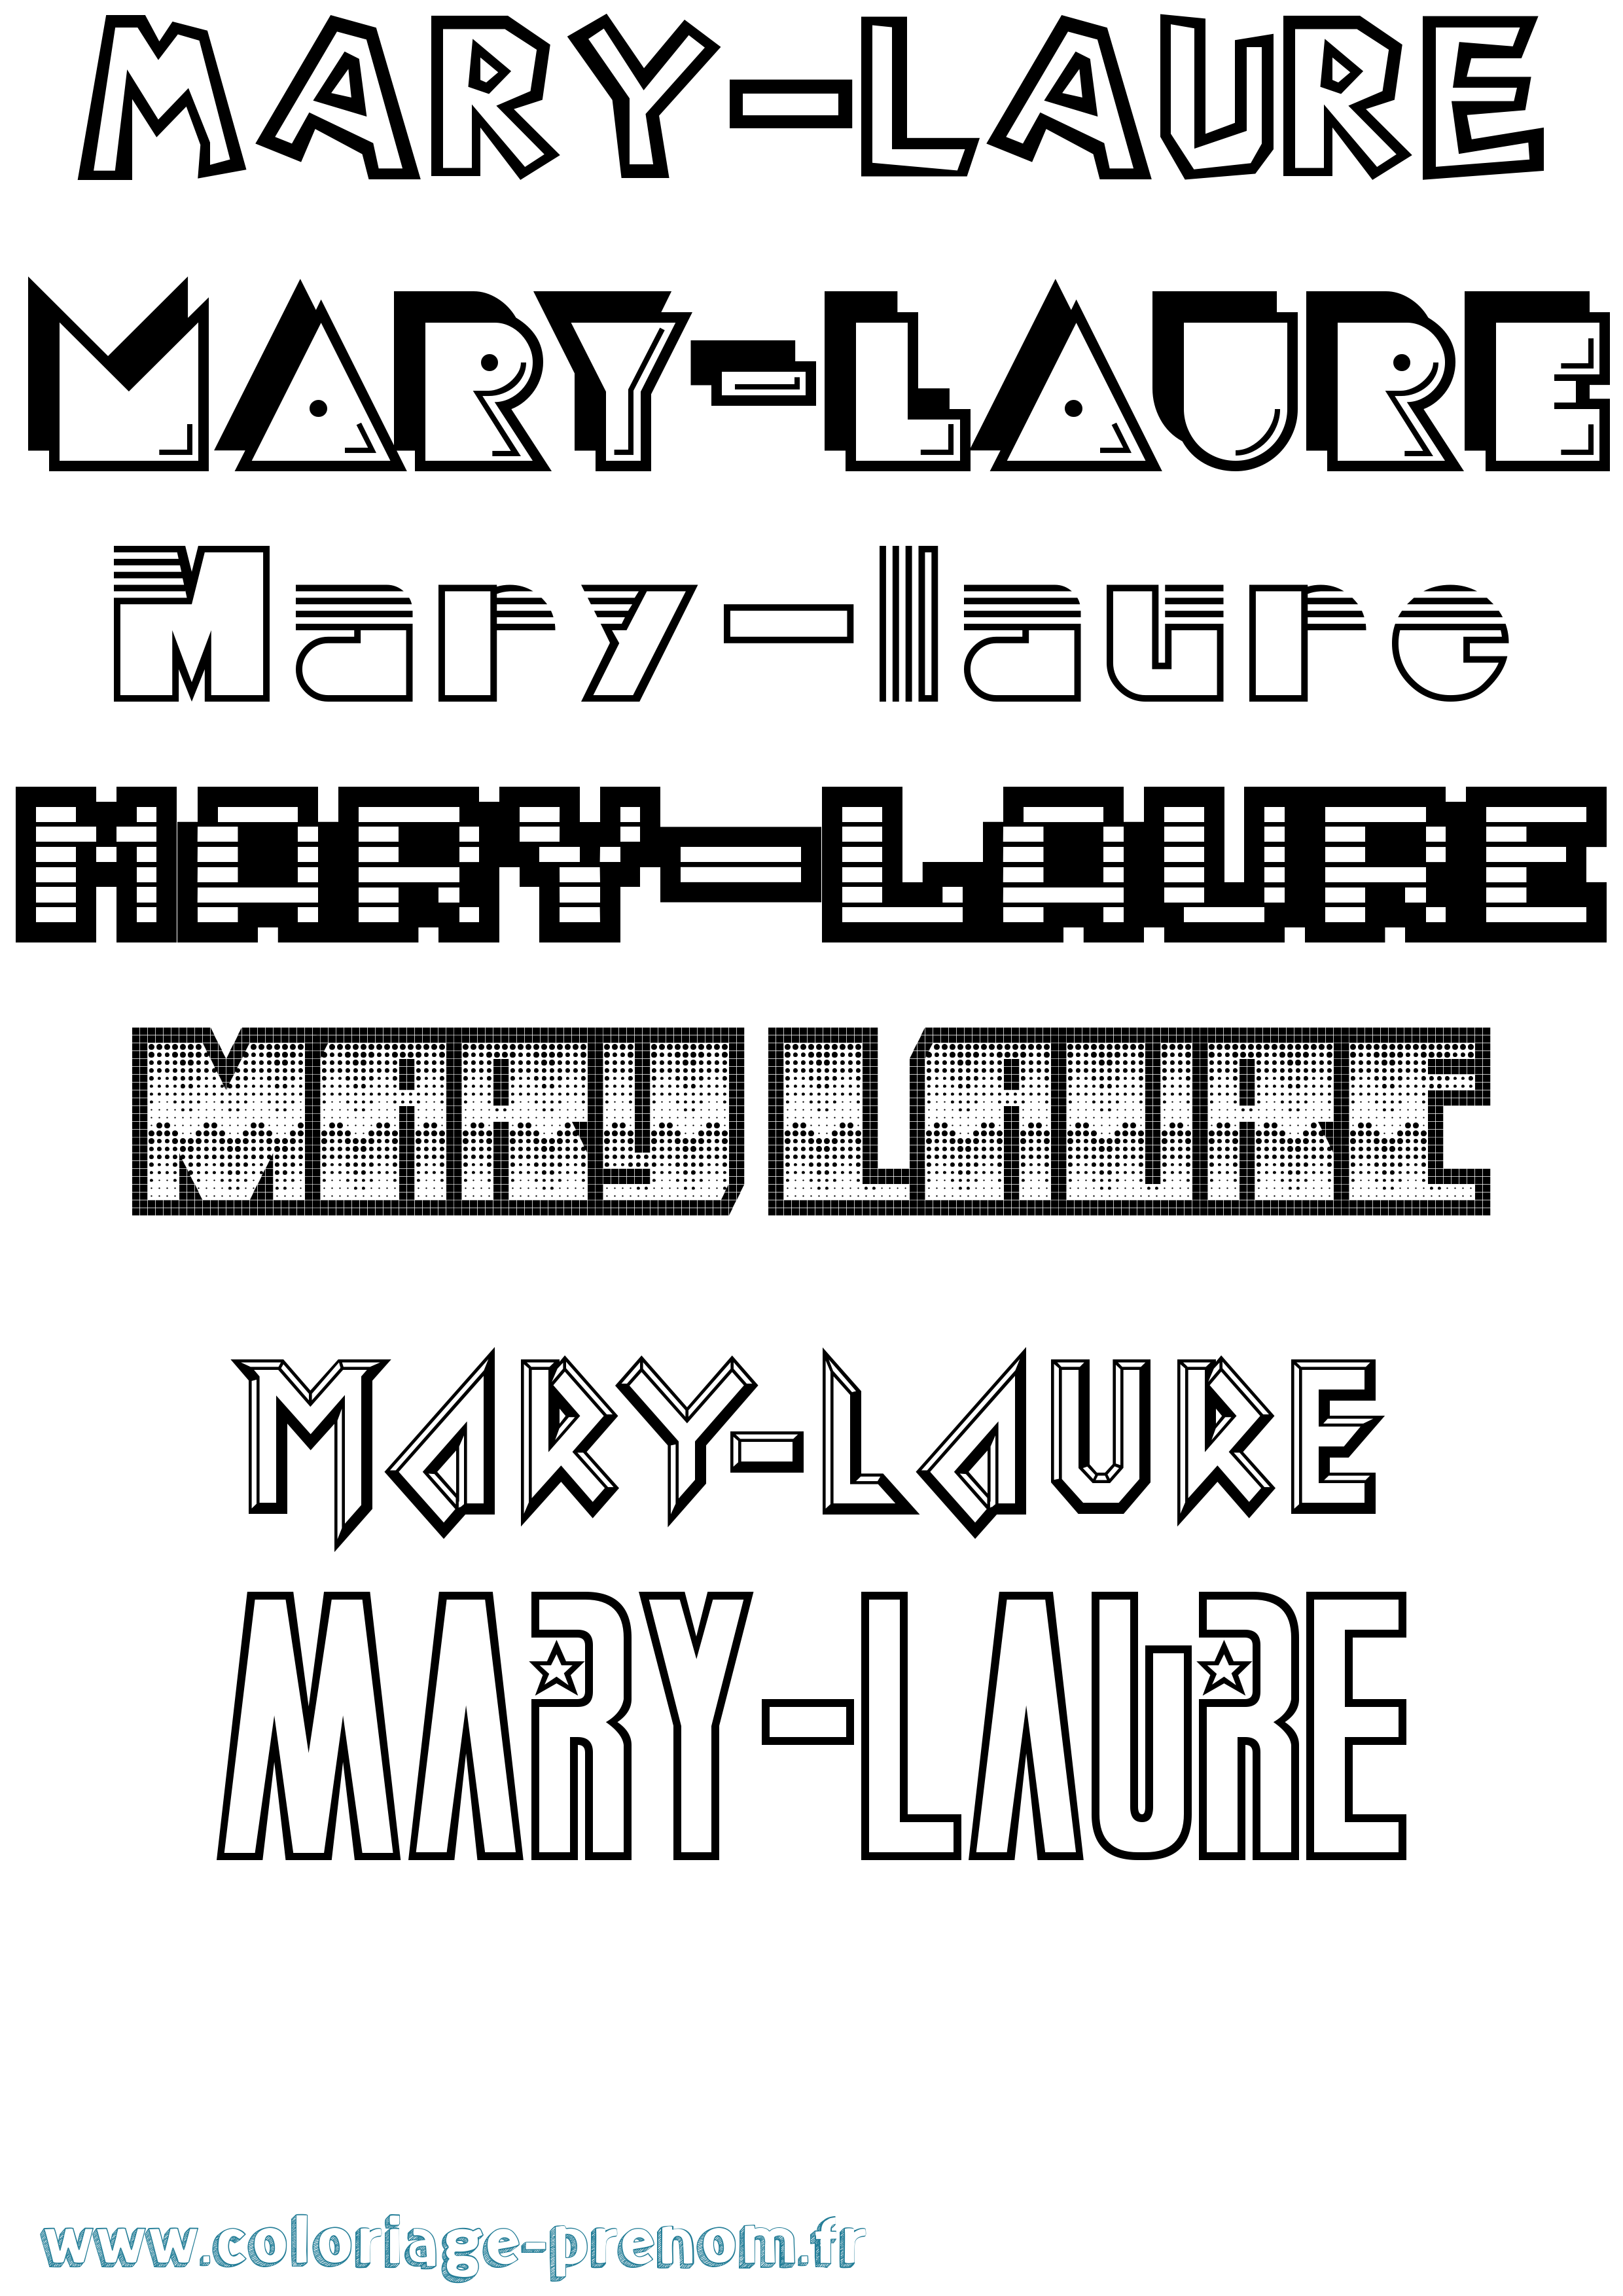 Coloriage prénom Mary-Laure Jeux Vidéos